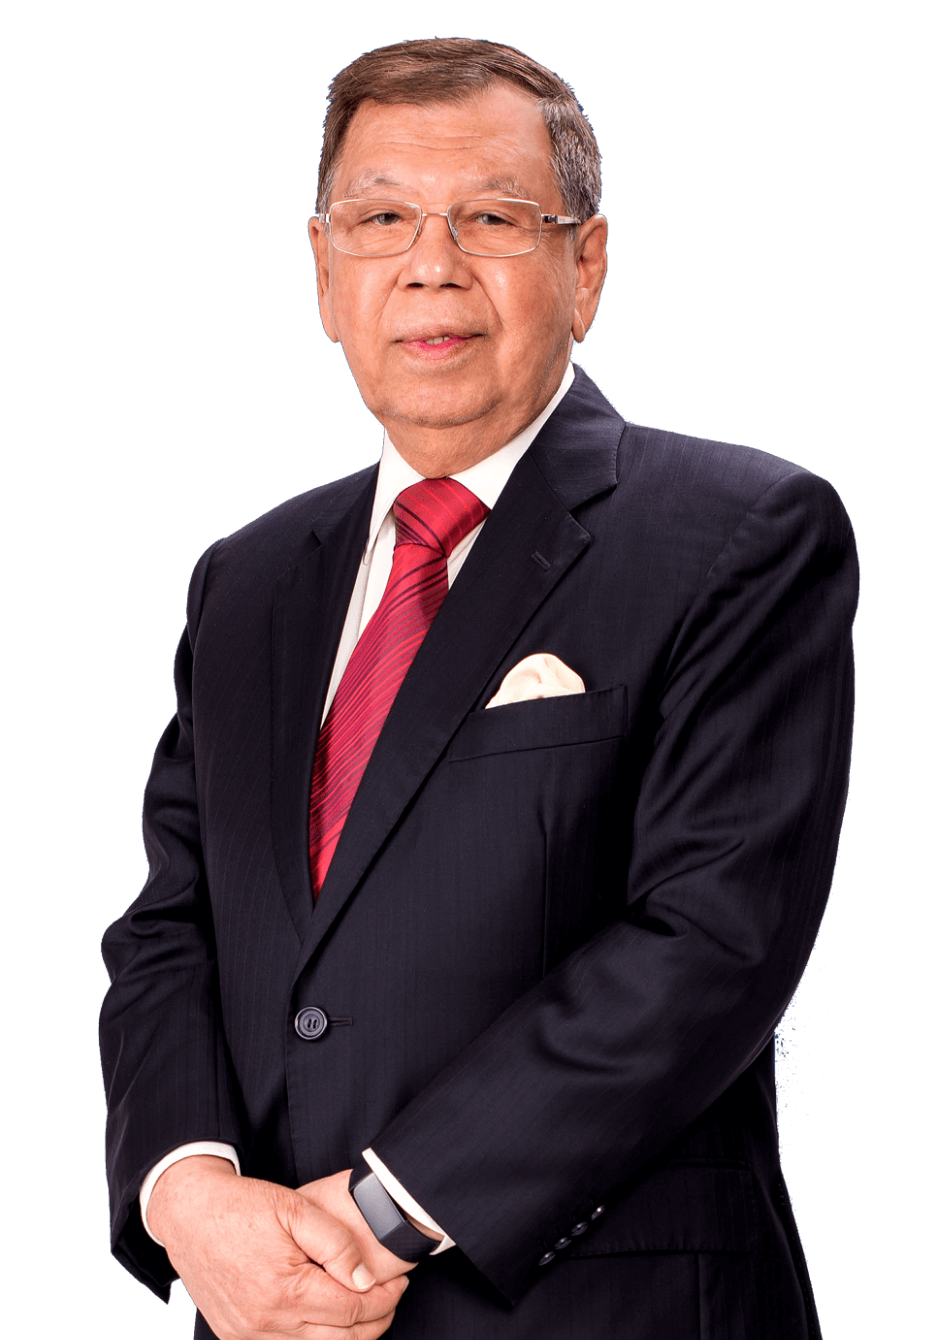 Tan Sri Datuk Seri Razman M Hashim